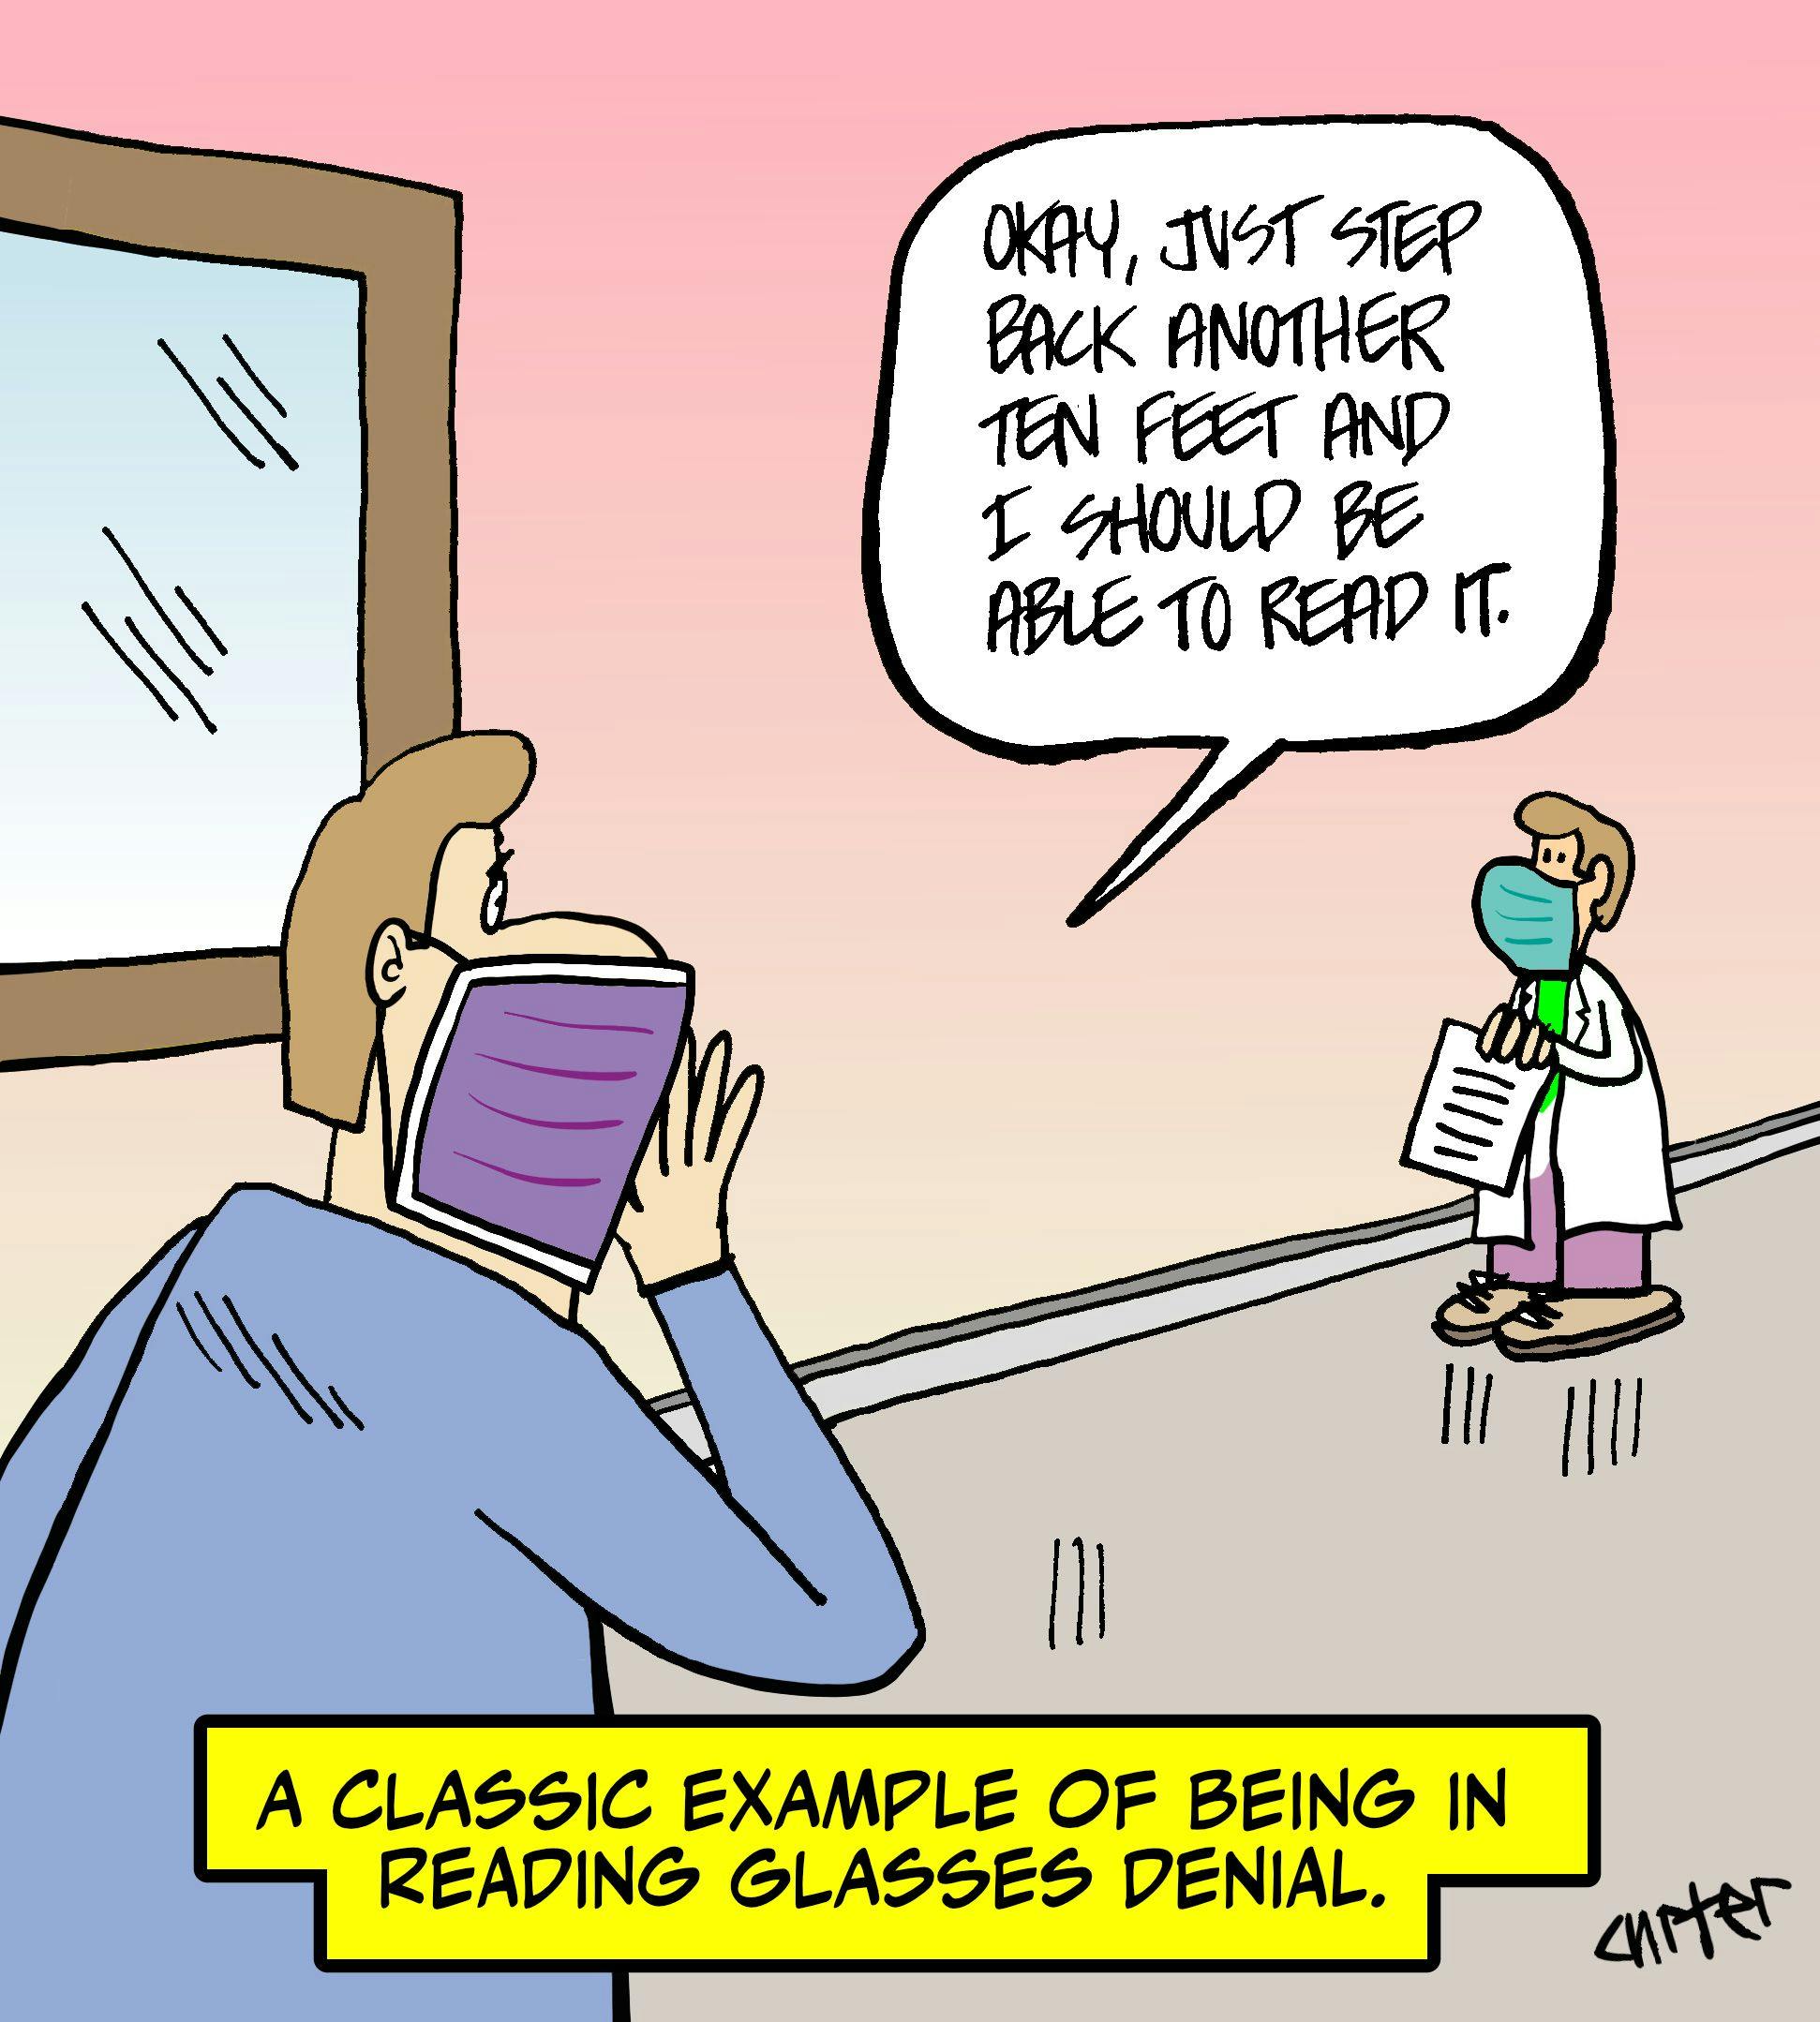 Reading glasses denial